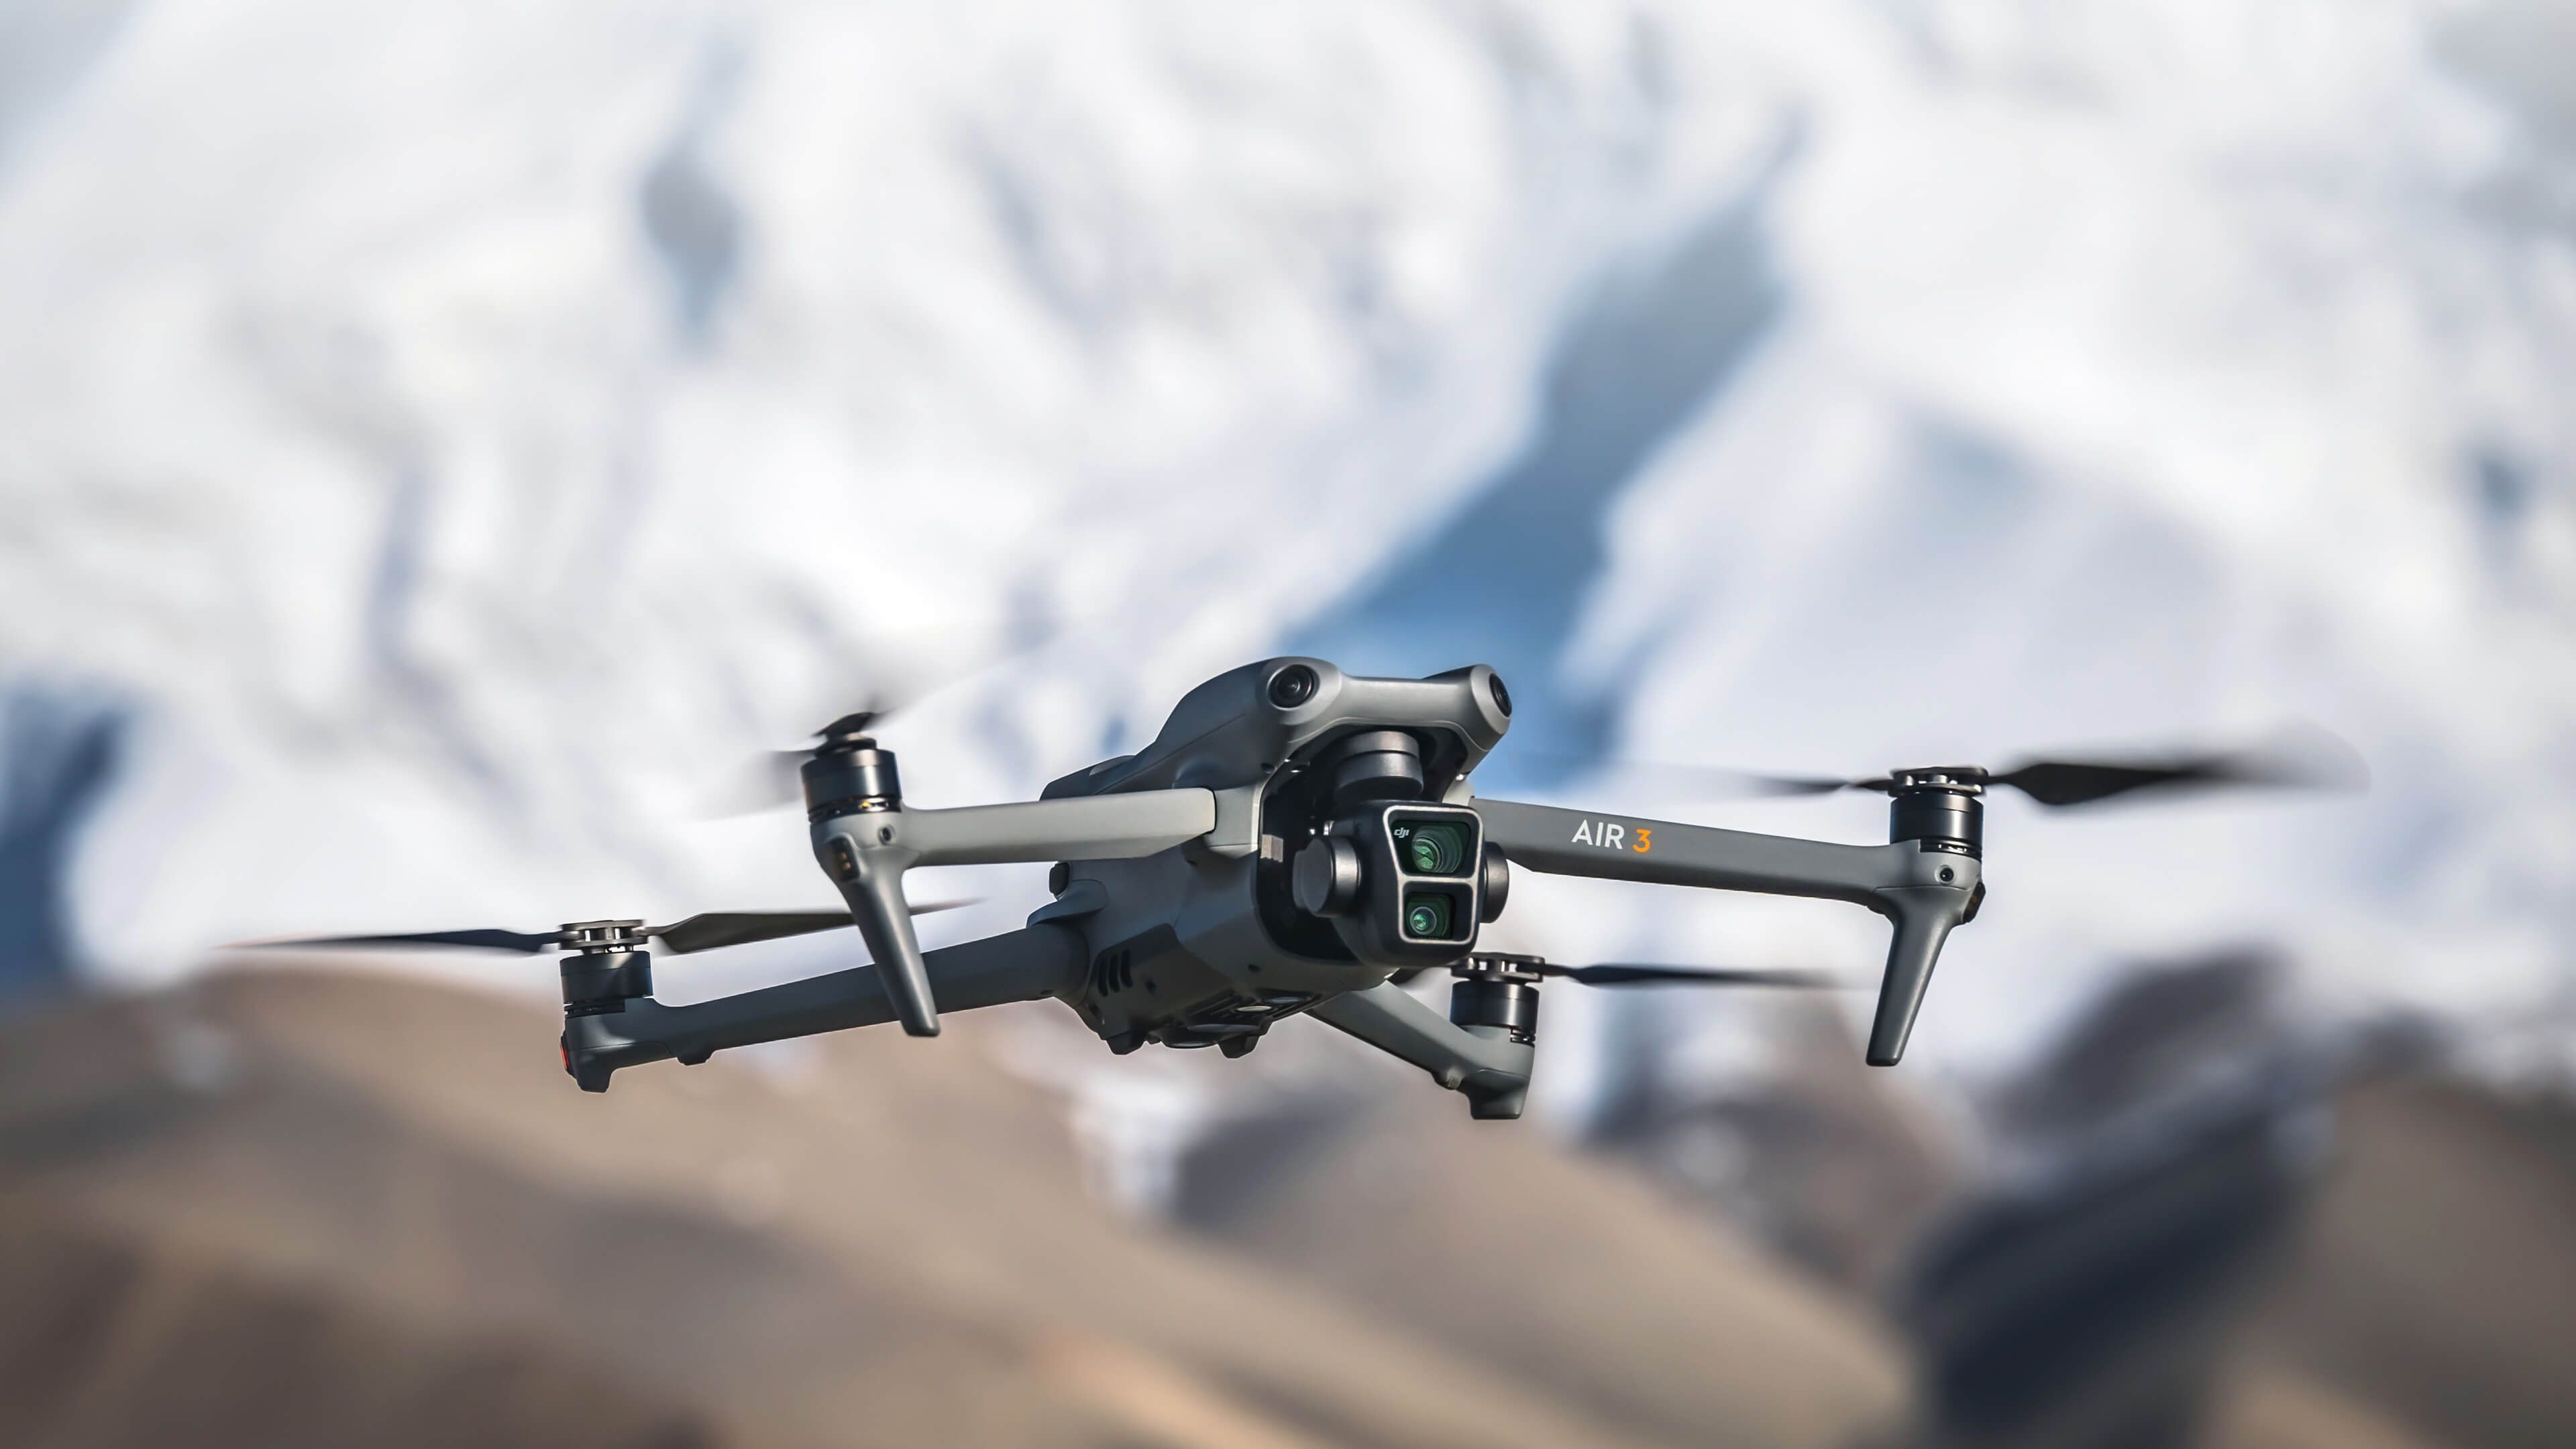 Los mejores drones con cámara que puedes comprar calidad precio